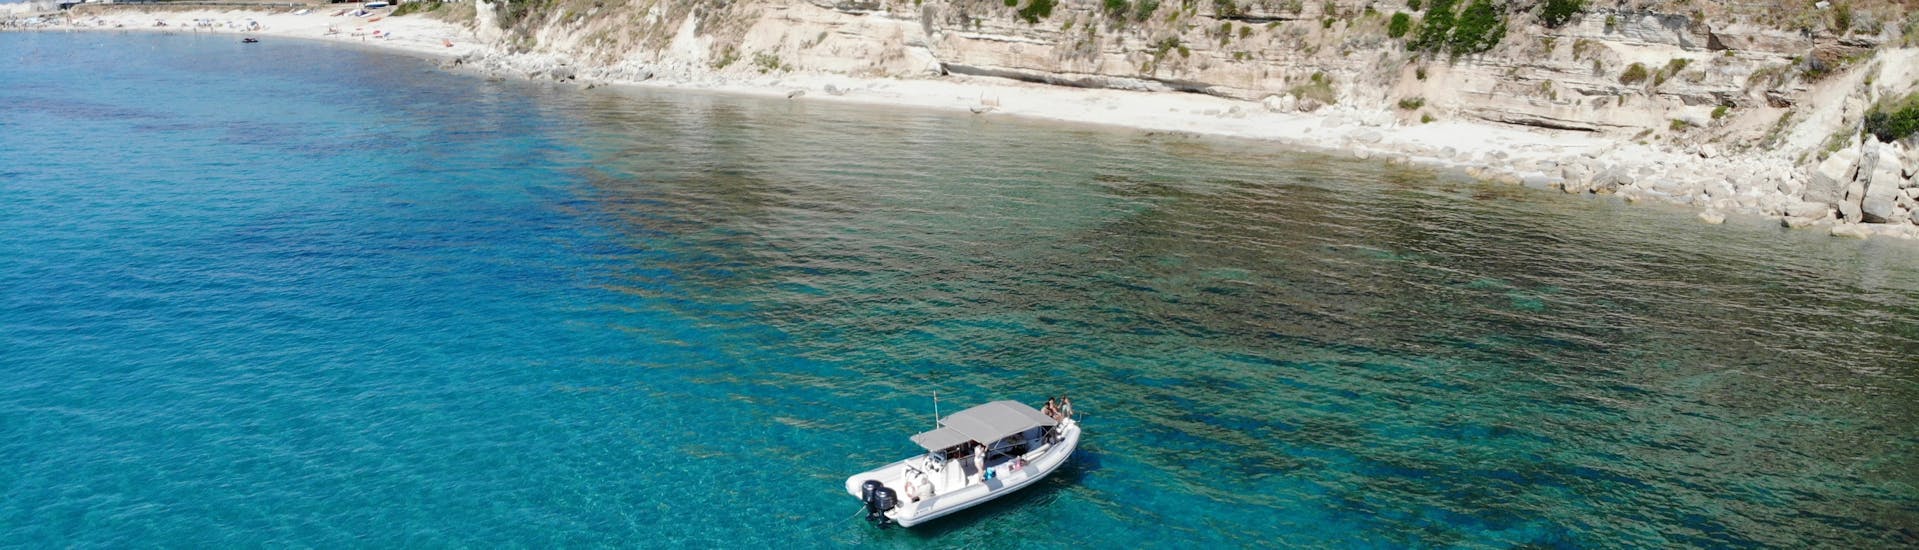 Boot vanuit Tropeasub van bovenaf gezien tijdens privéboottocht van Tropea naar Sant'Irene met snorkelen.